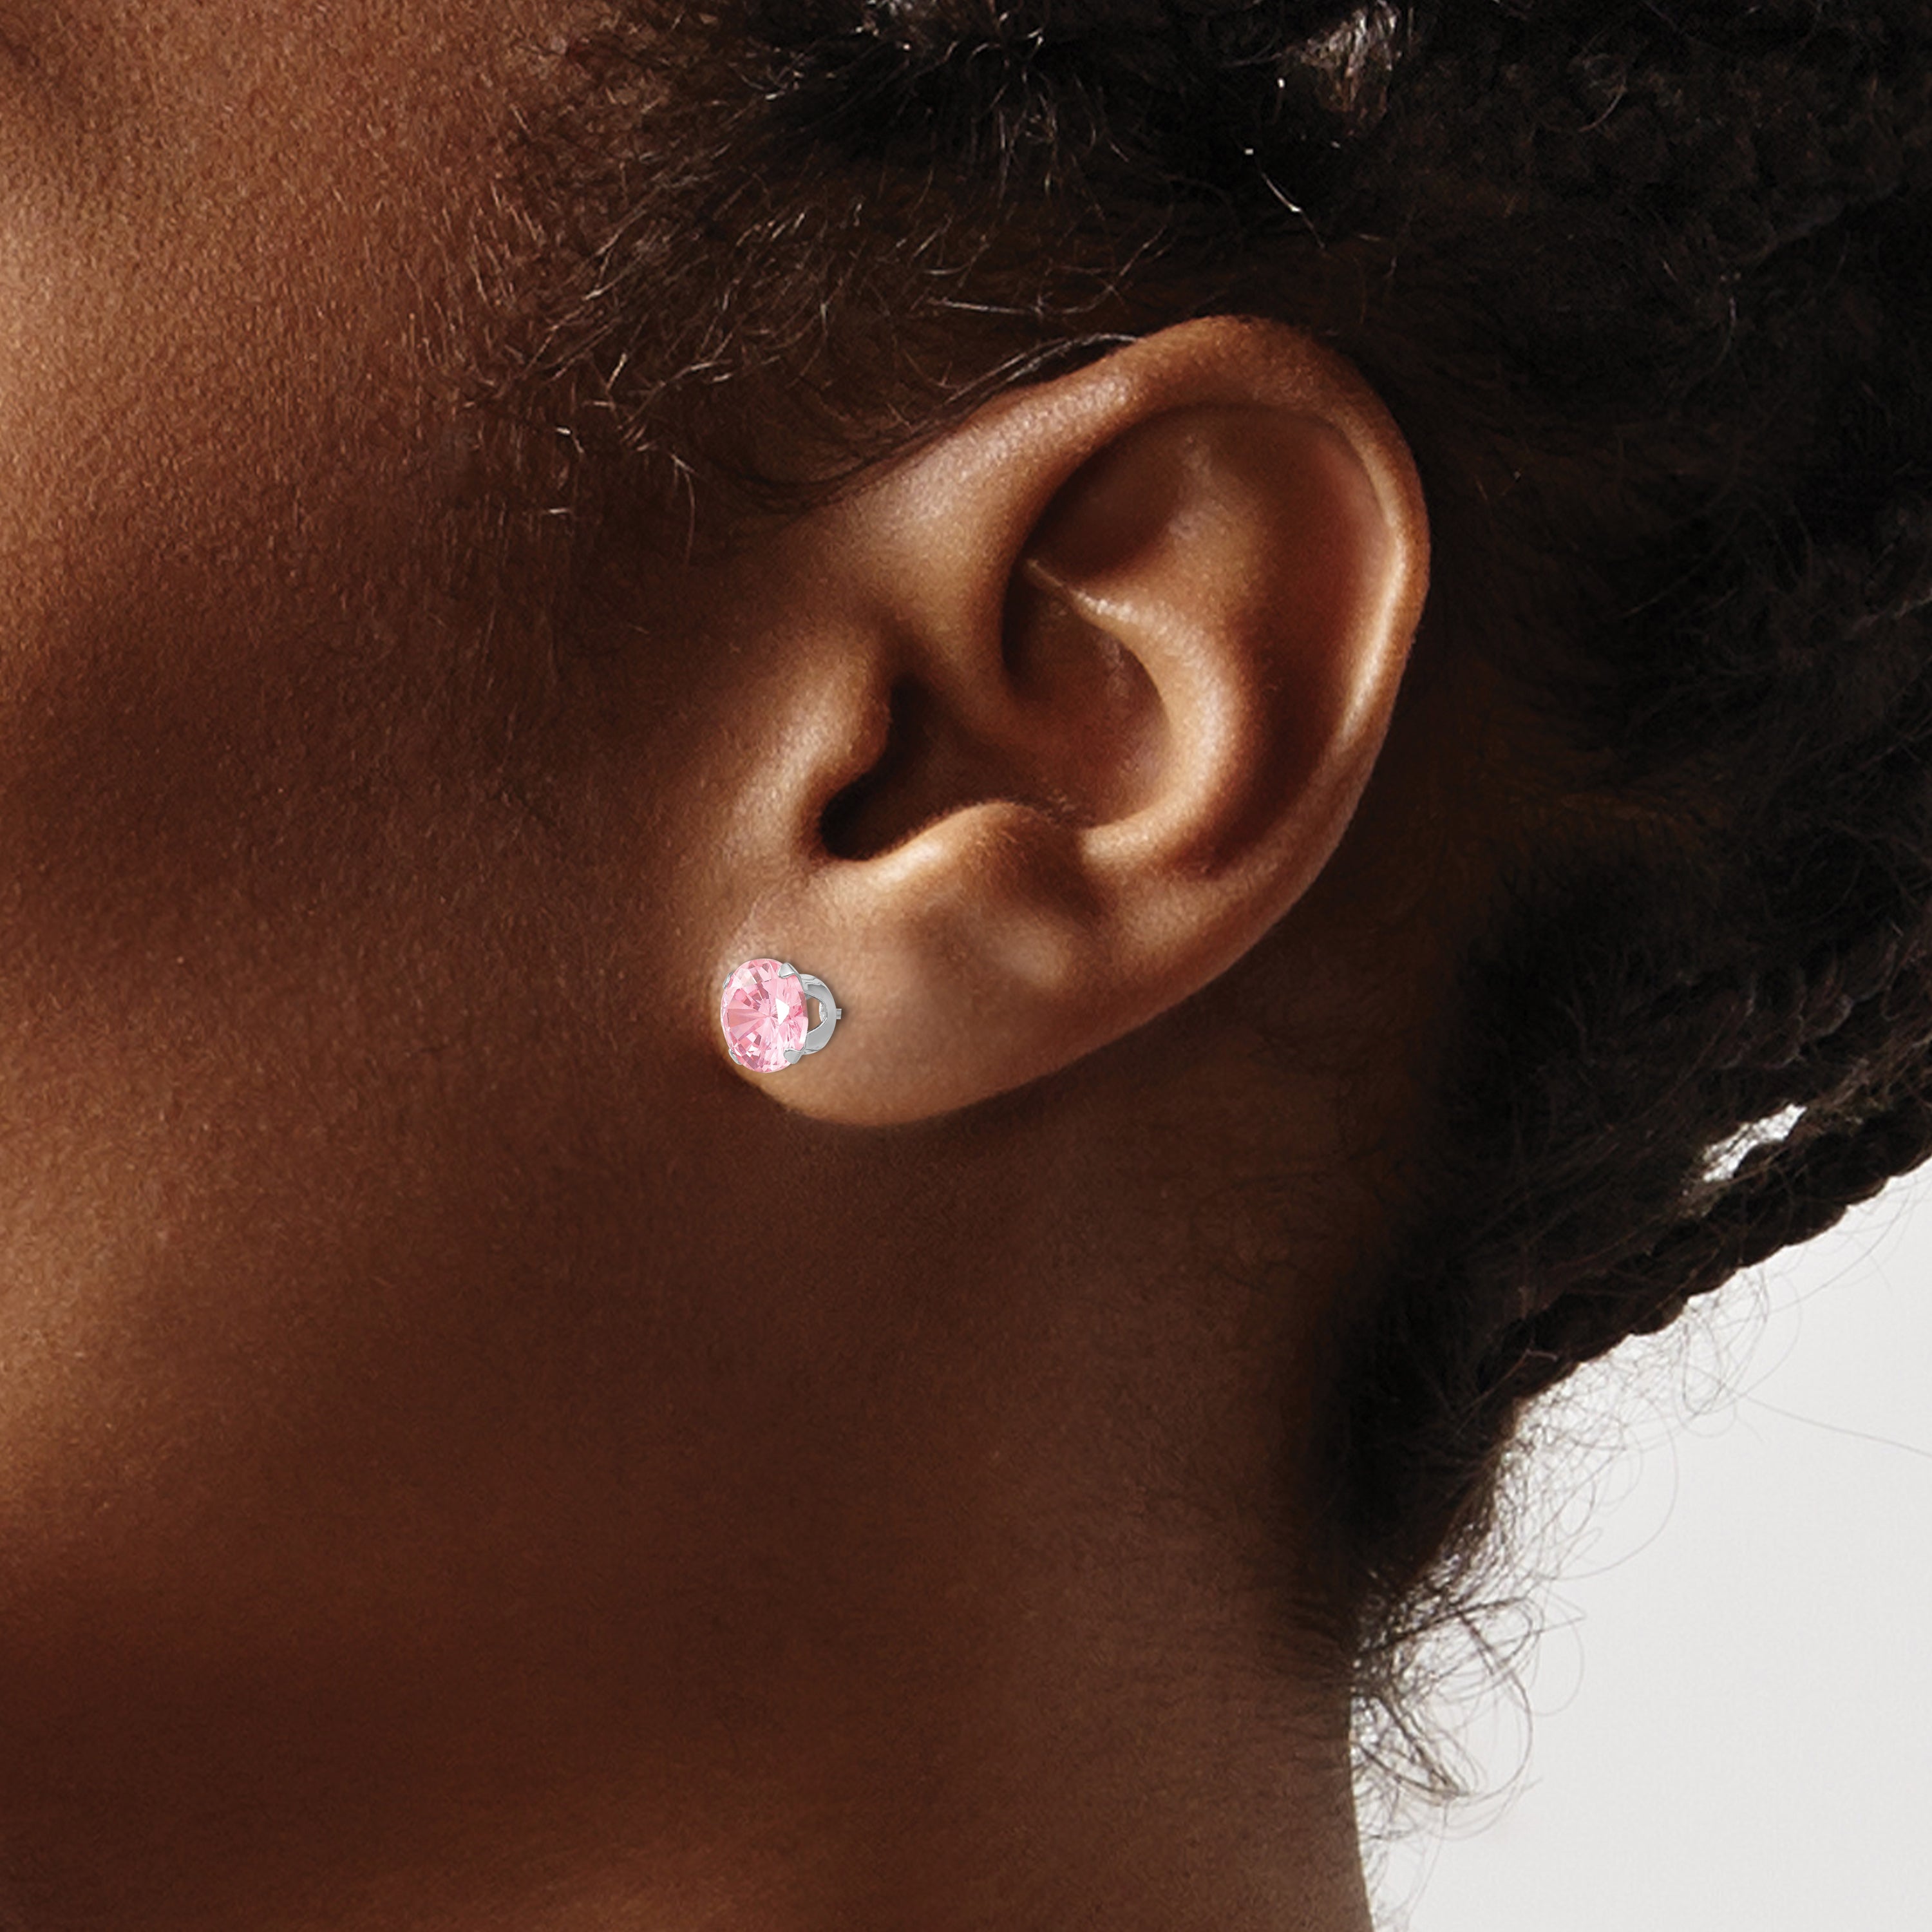 14k White Gold Madi K 6.5mm Pink CZ Post Earrings